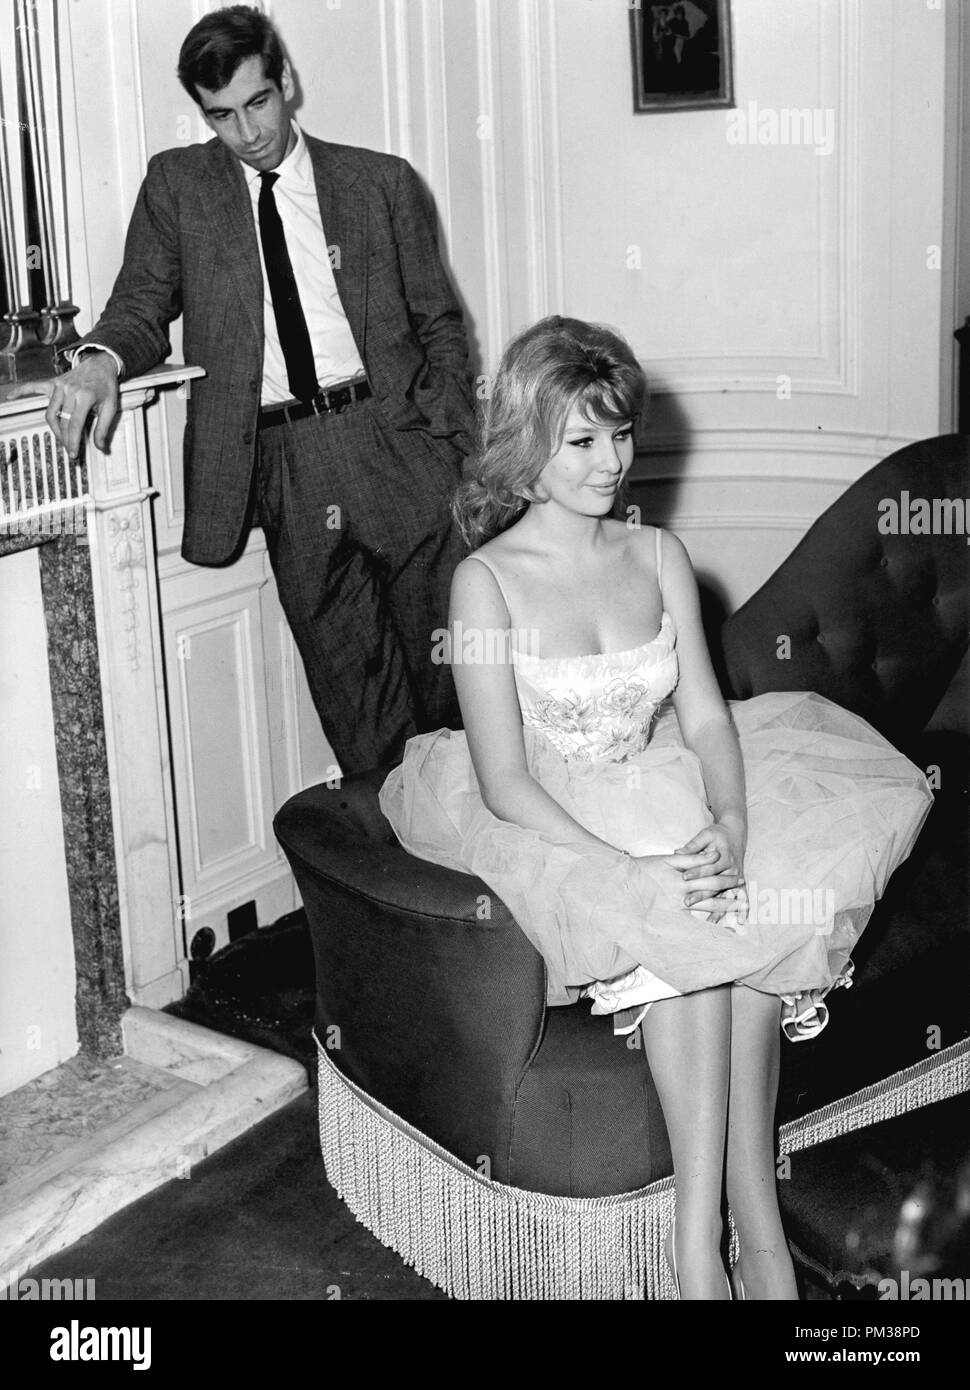 Roger Vadim y su esposa Annette Stroyberg,1958. Archivo de referencia # 1232 001tha © CCI /El Hollywood Archive - Todos los derechos reservados Foto de stock